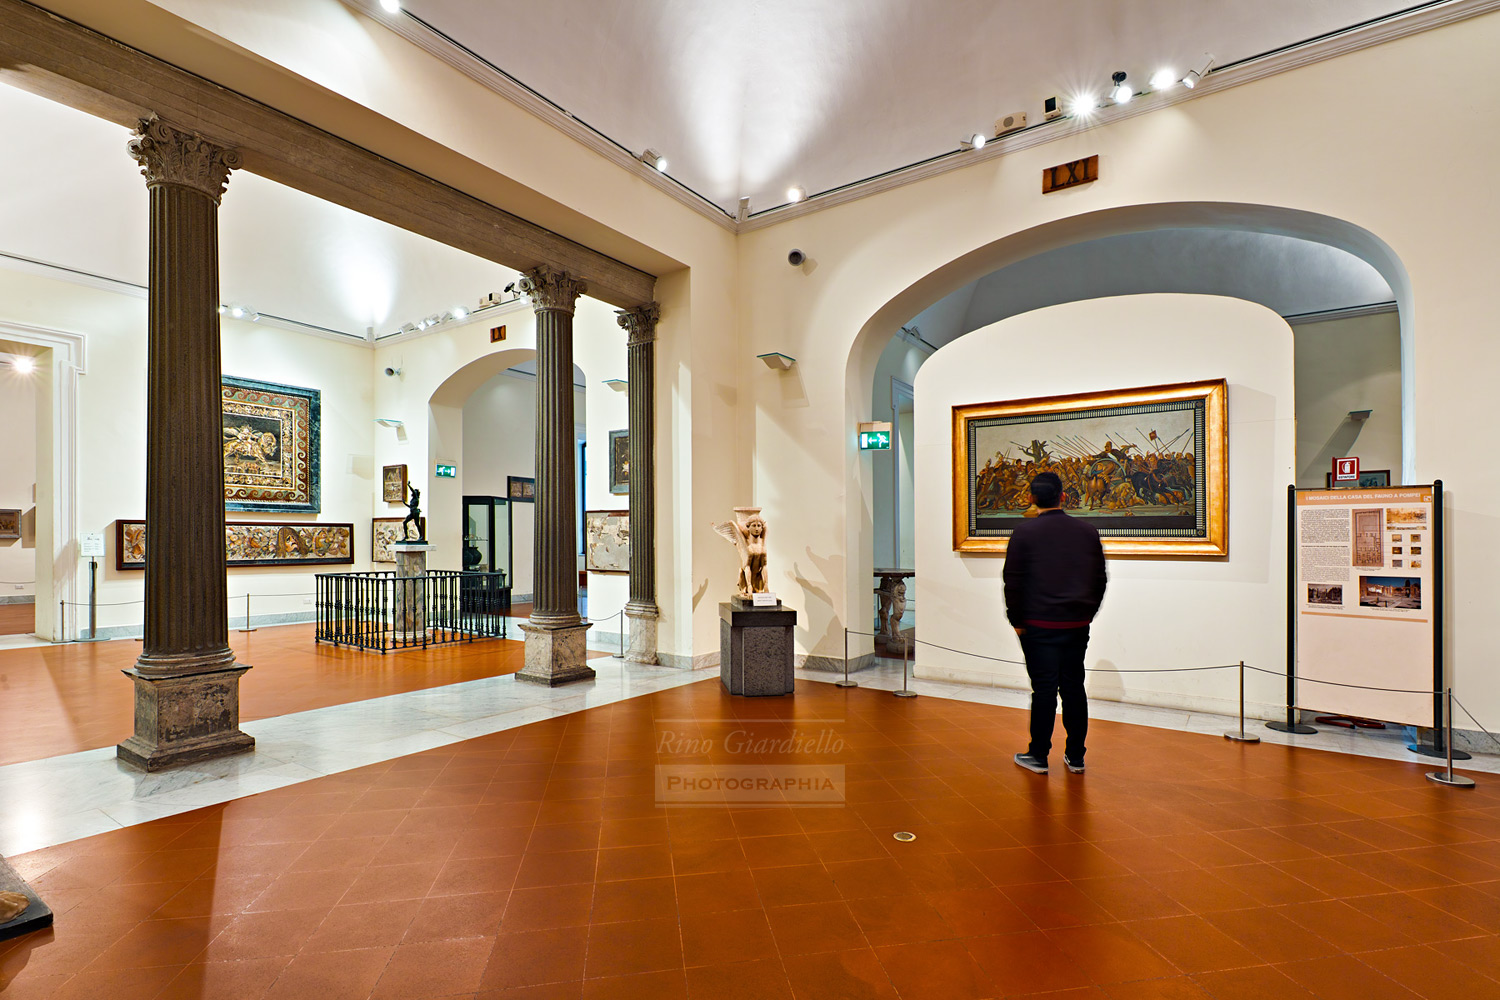 Museo Archeologico Nazionale di Napoli - MANN - foto Rino Giardiello © Luci Zumtobel